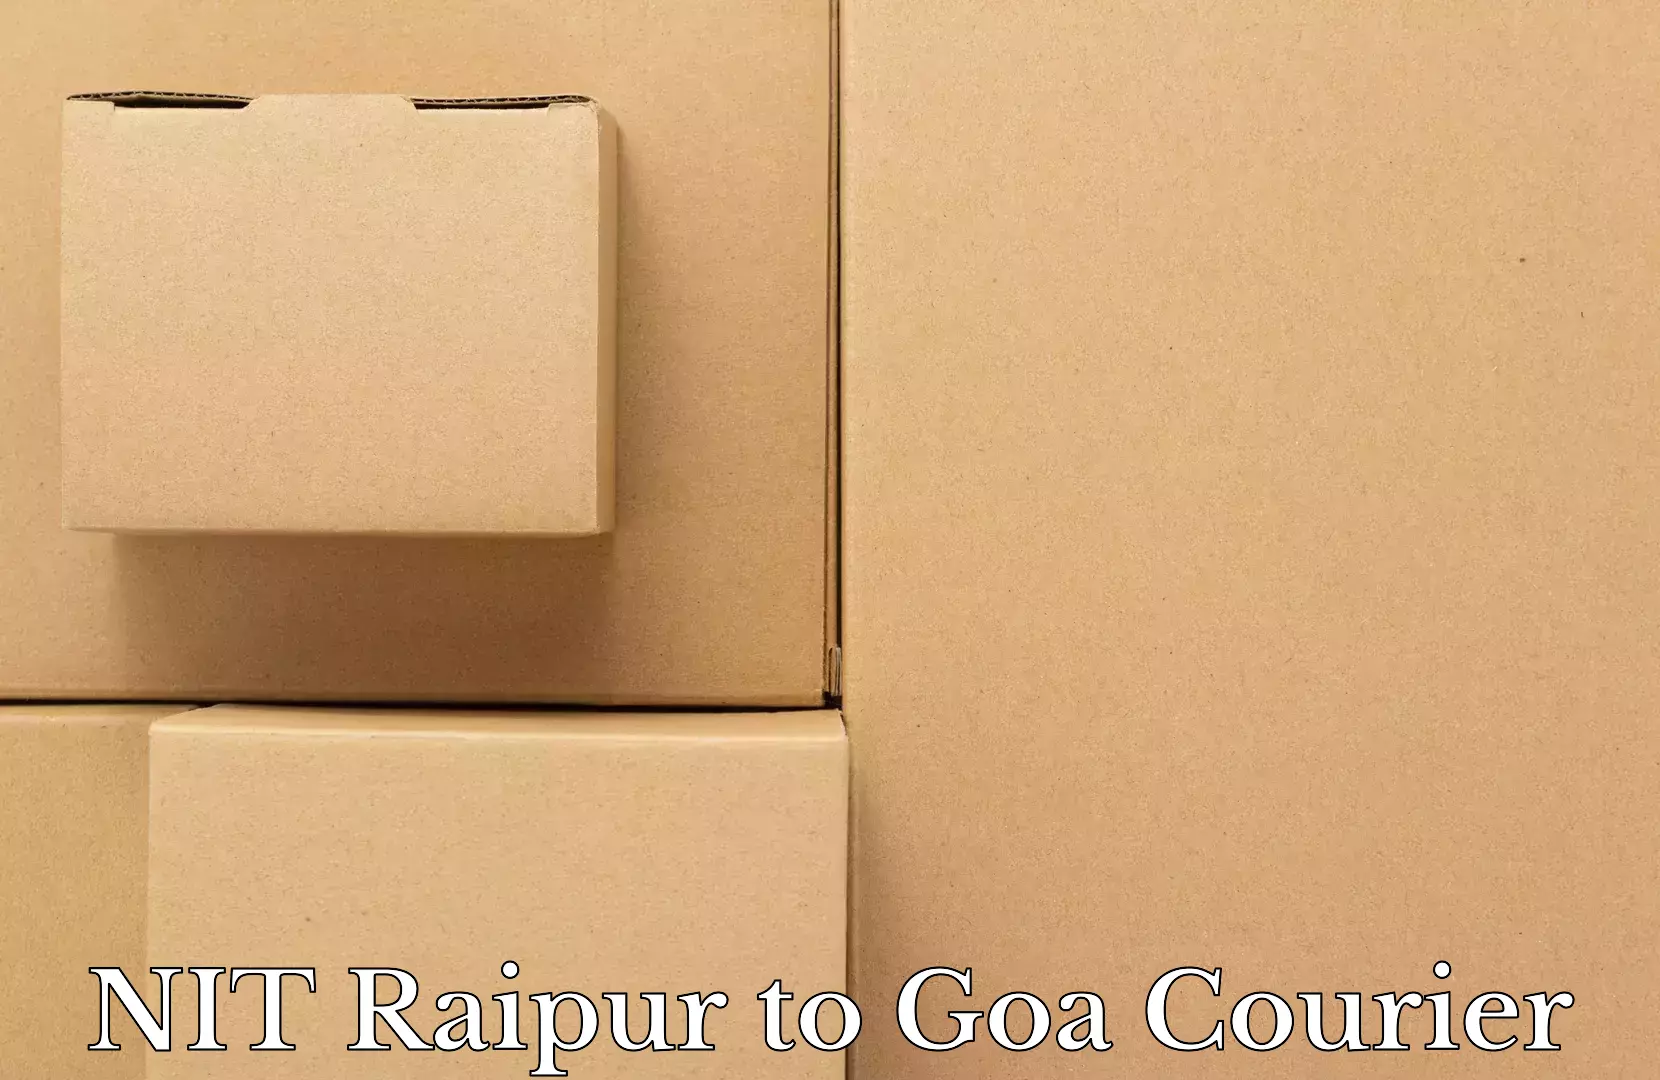 Luggage transit service NIT Raipur to Goa